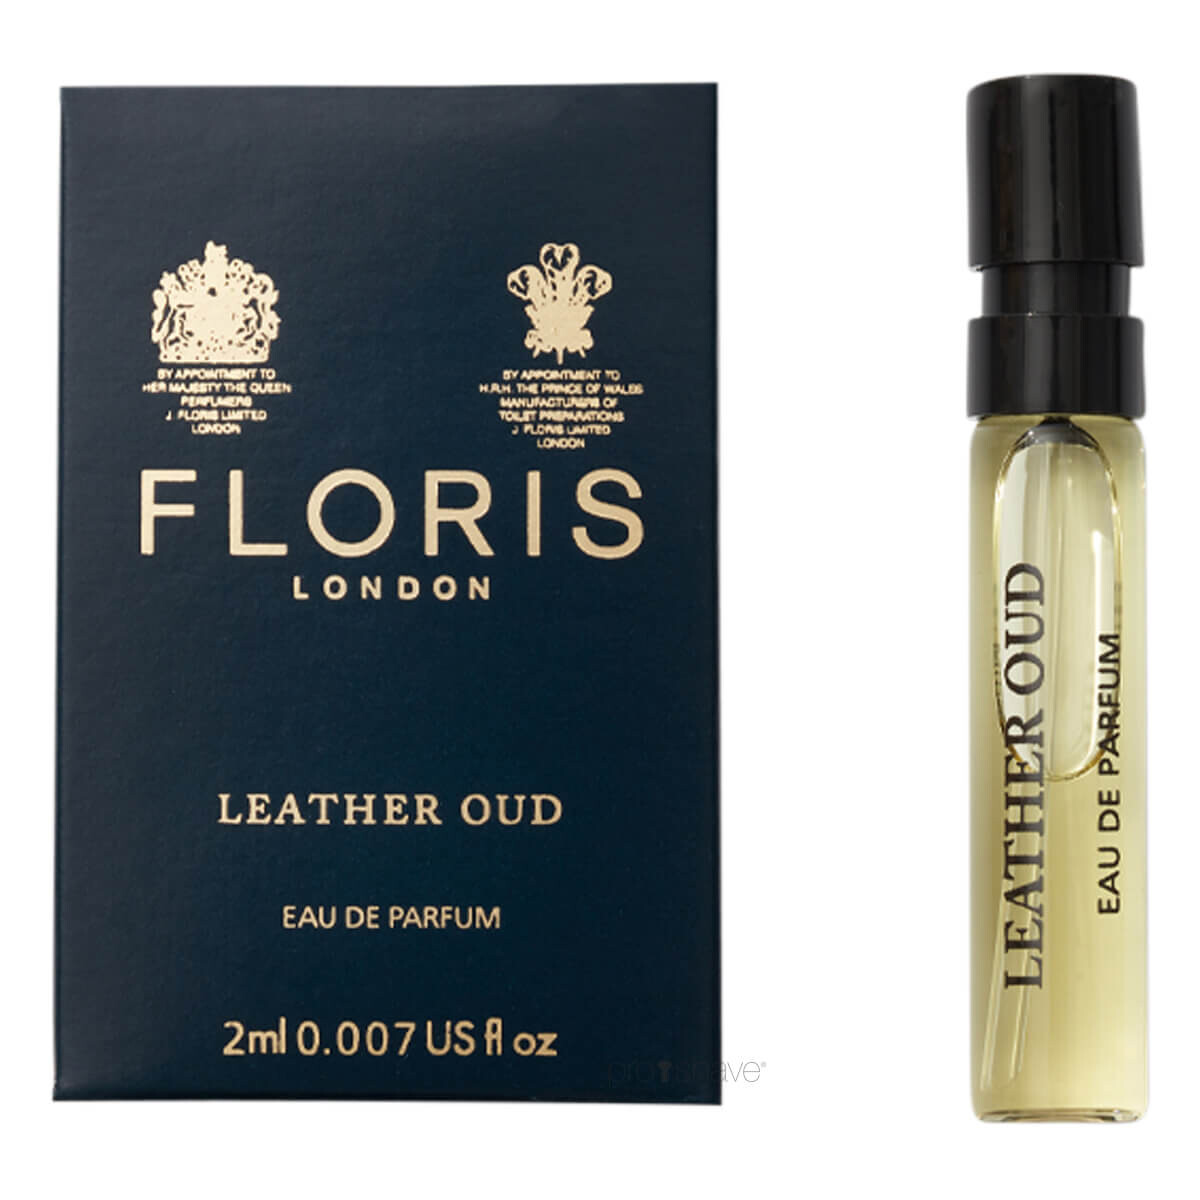 Billede af Floris Leather Oud, Eau de Parfum, DUFTPRØVE, 2 ml.